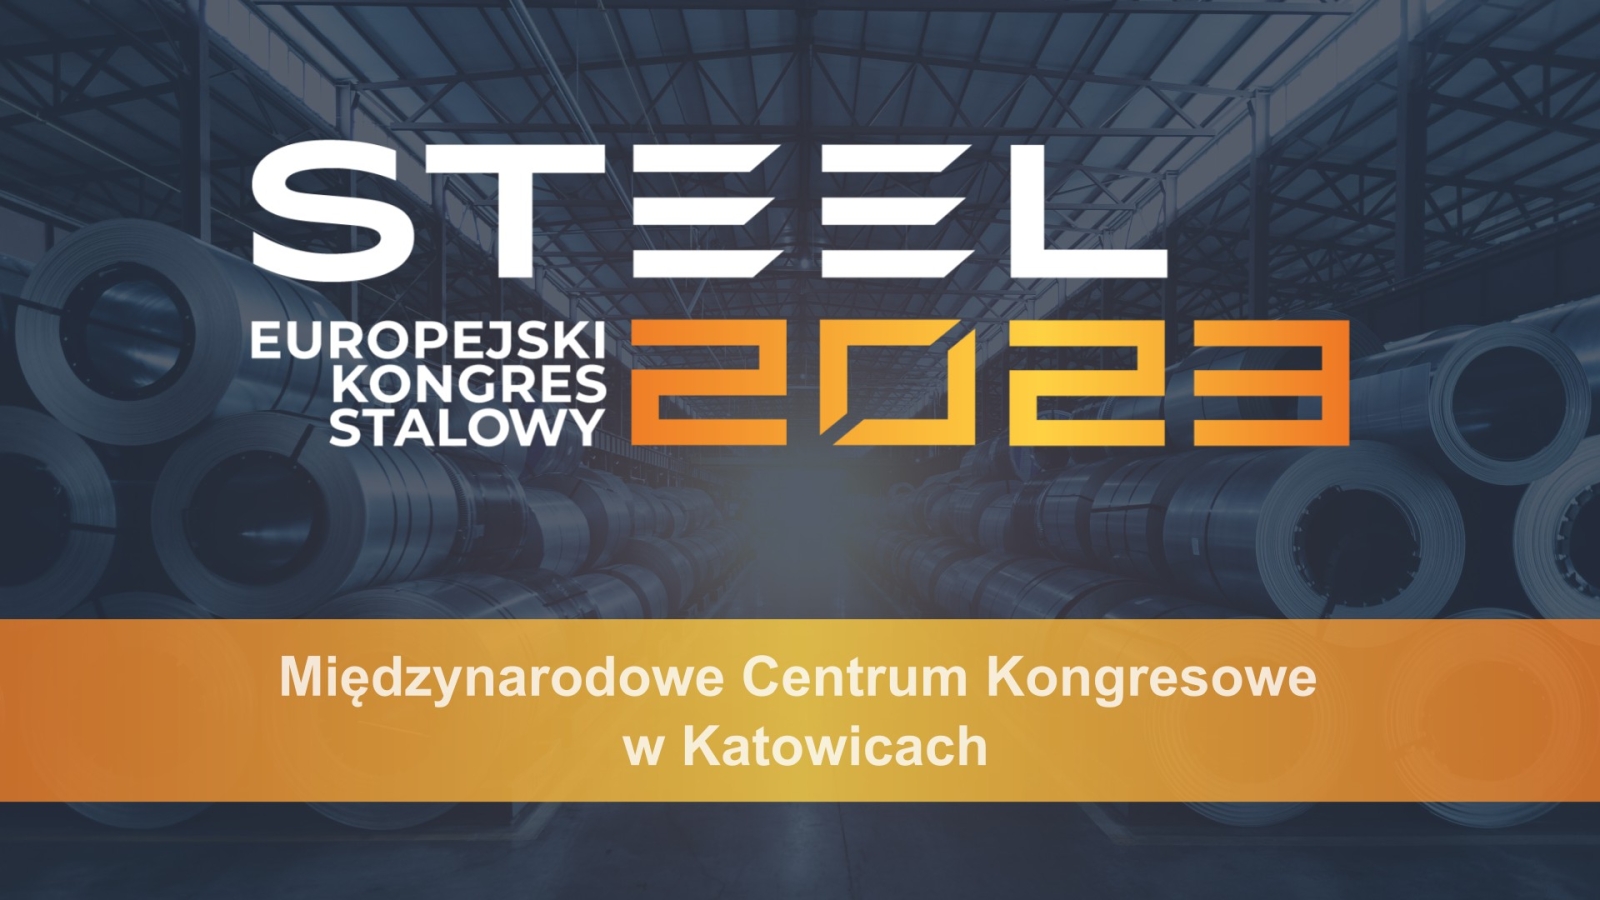 Poznaj nowe perspektywy dla branży metalurgicznej podczas Steel 2023